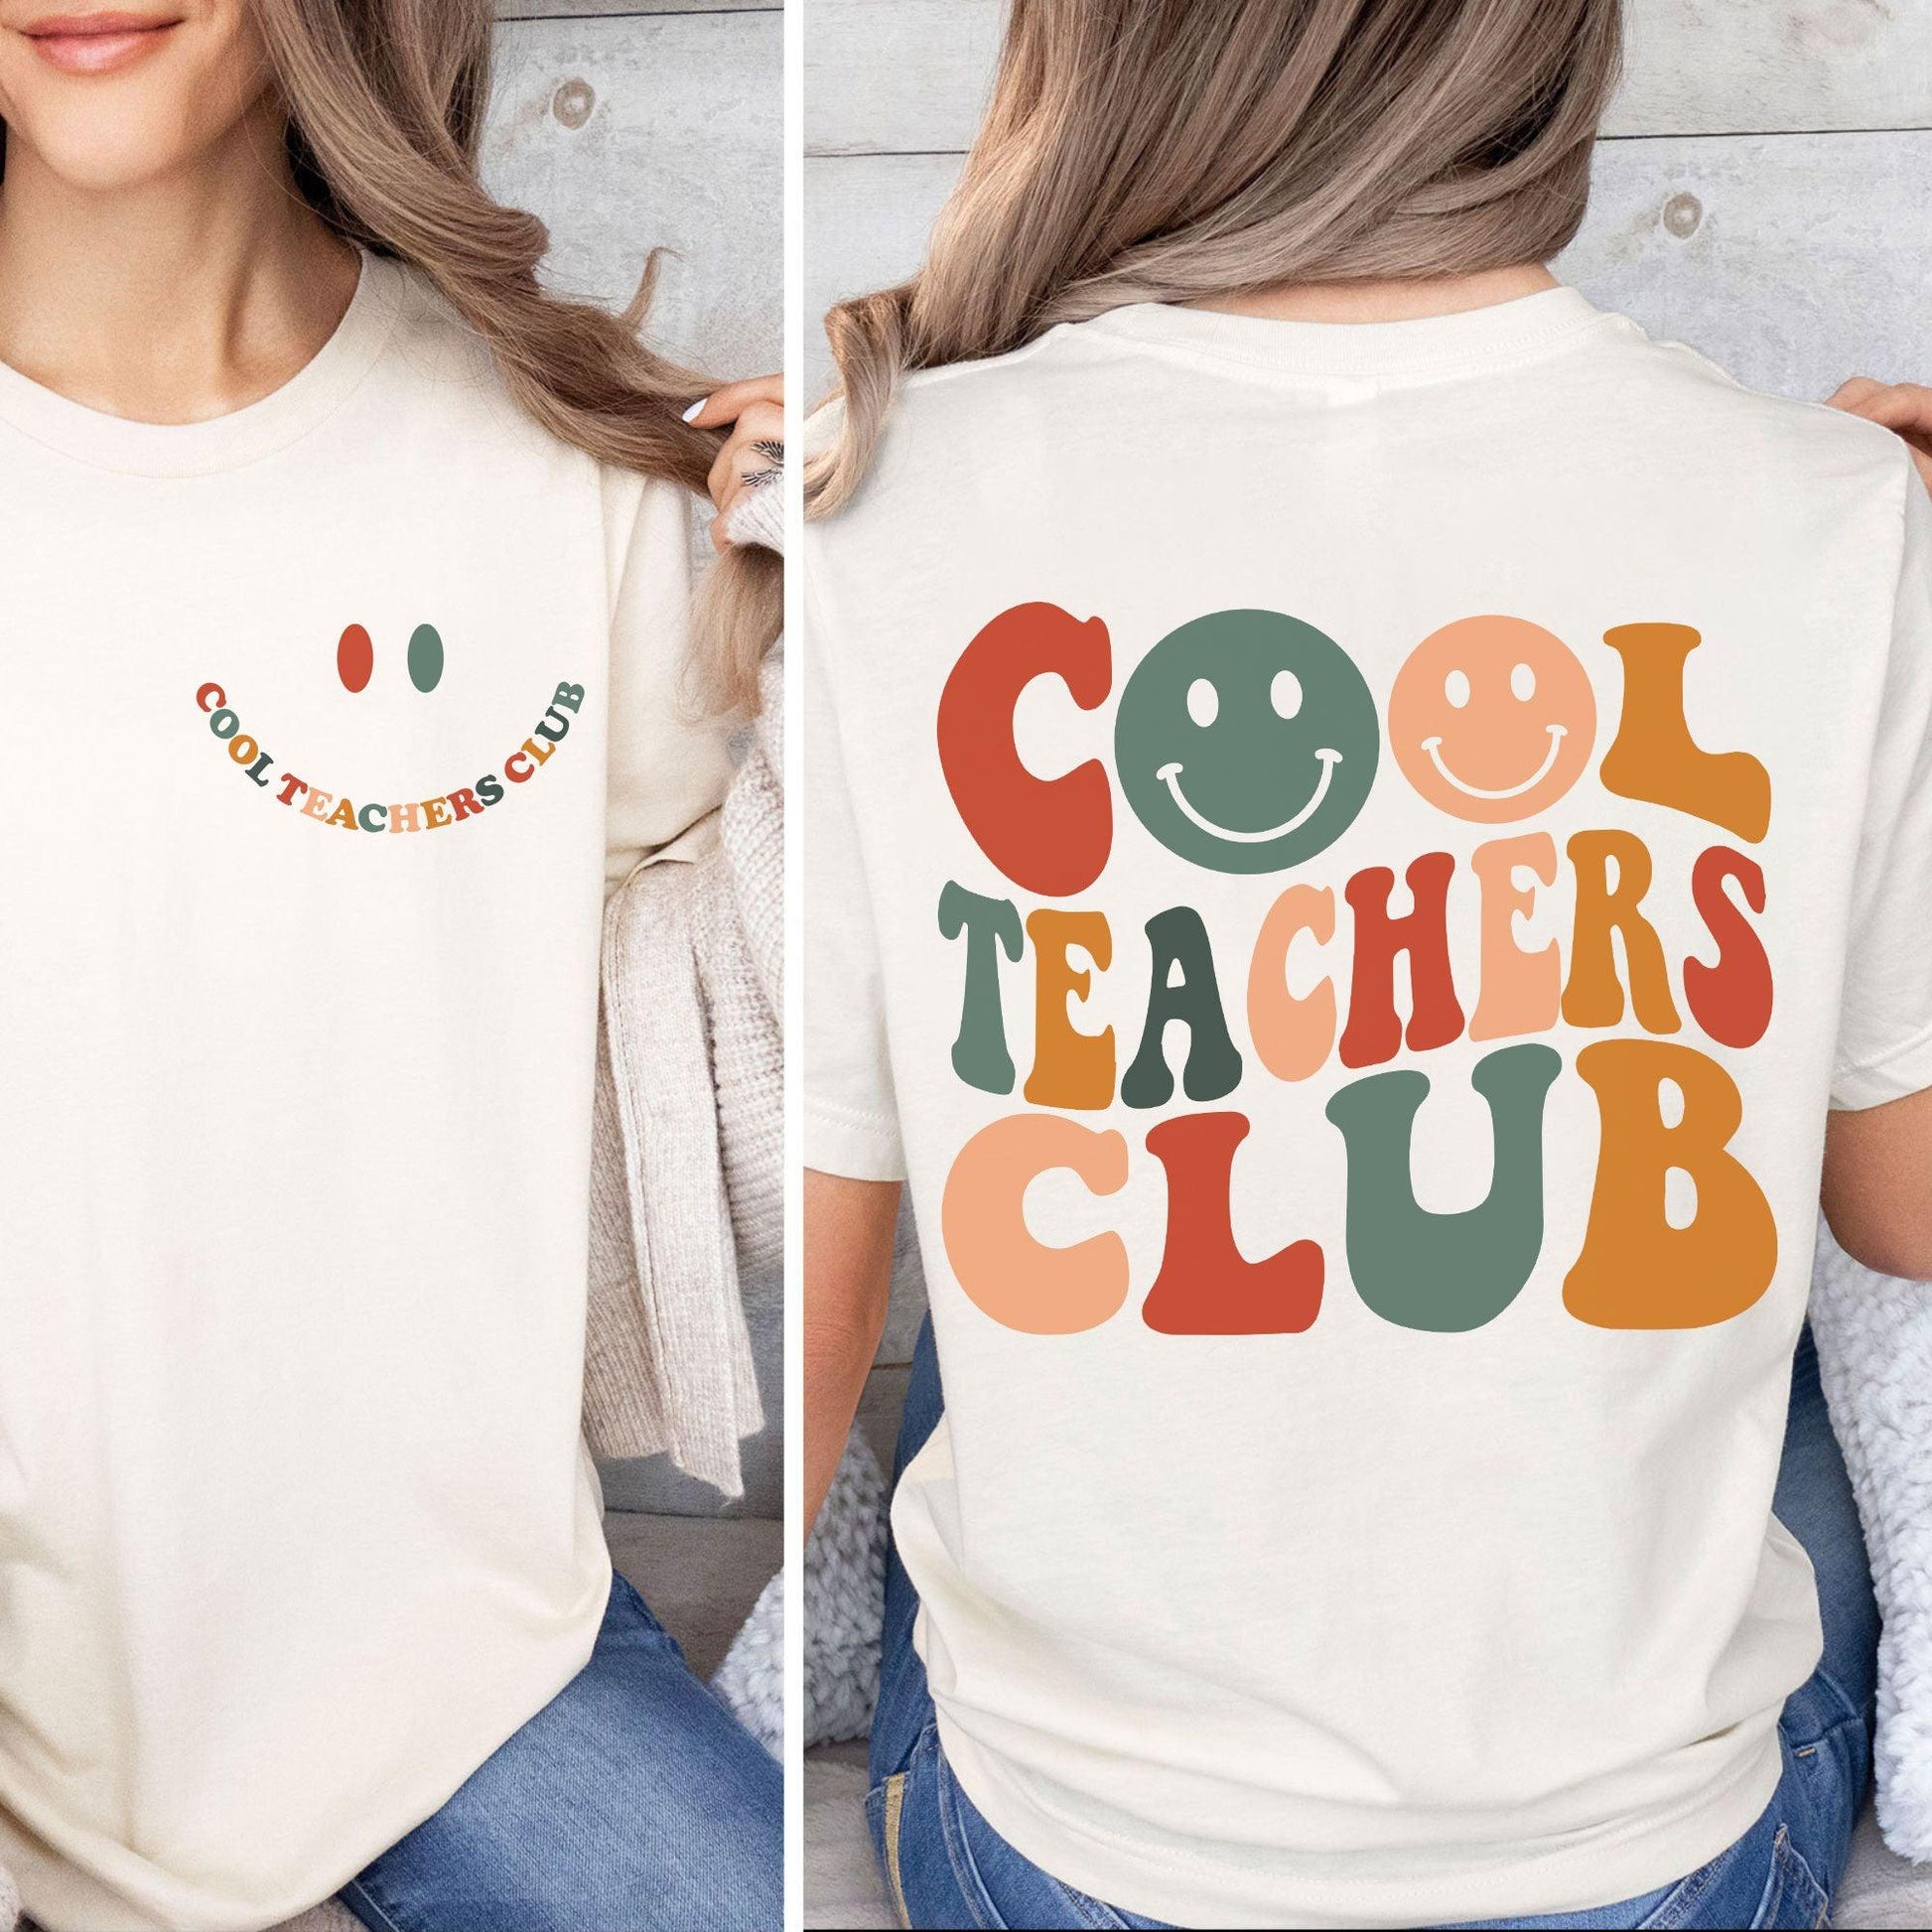 Cooles Teachers Club Sweatshirt - Geschenke für Lehrer - GiftHaus